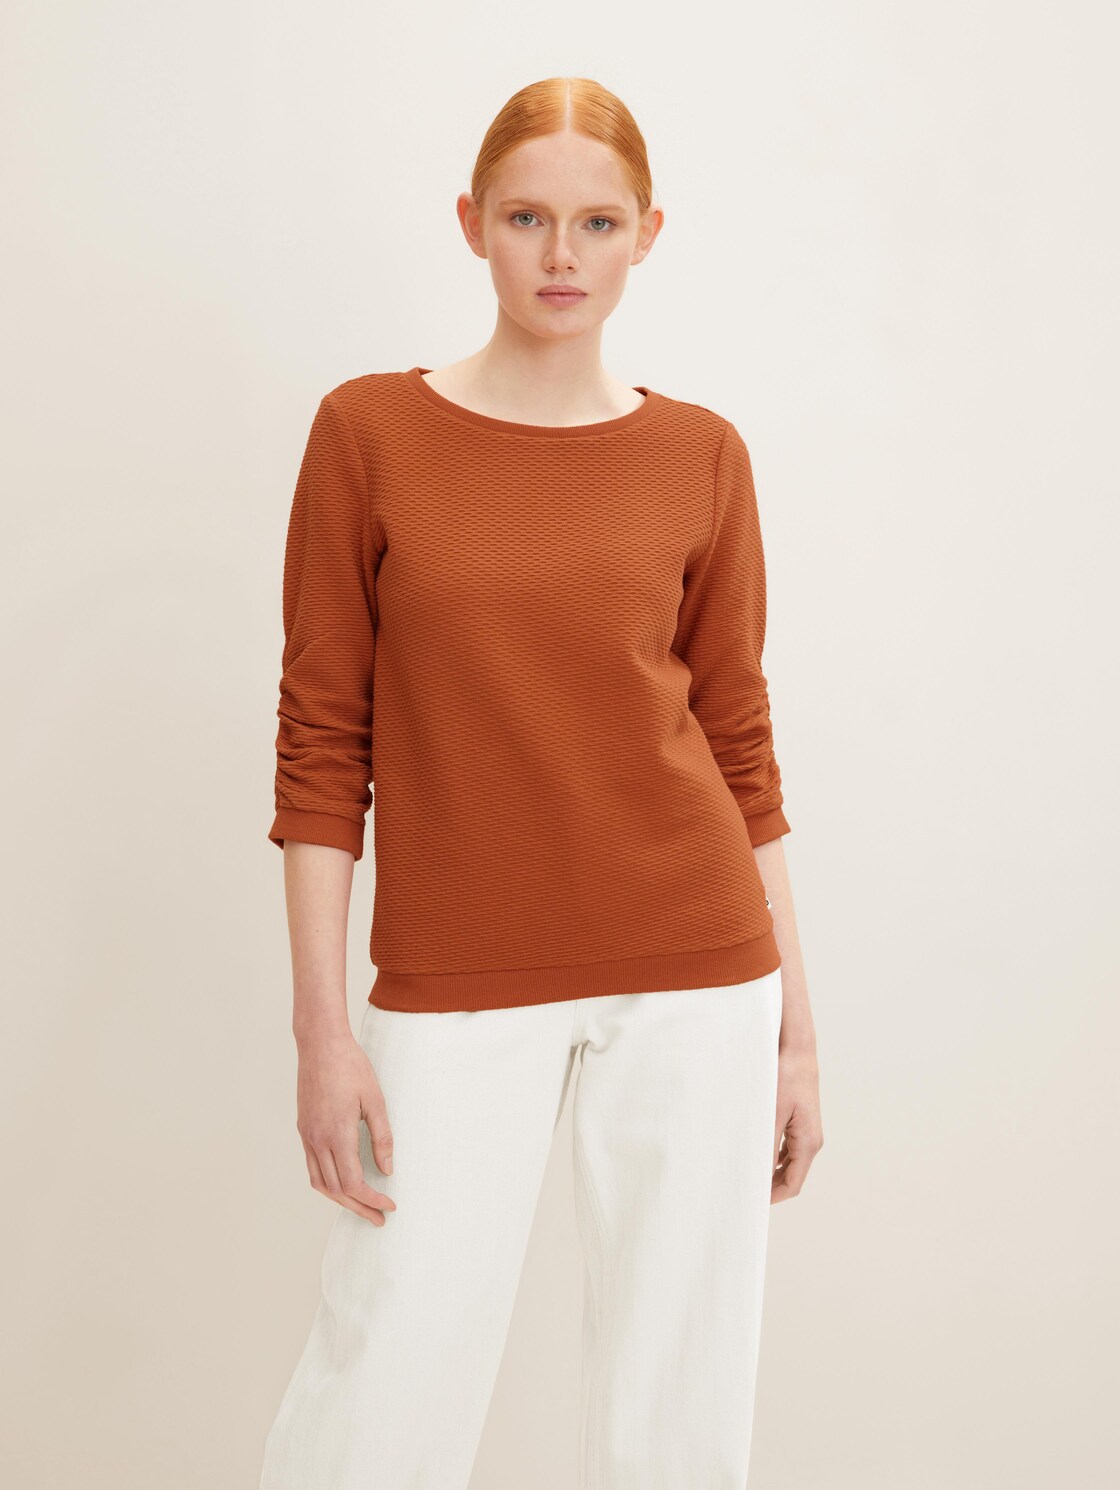 TOM TAILOR DENIM Damen Strukturiertes Sweatshirt, orange, Gr. XL,